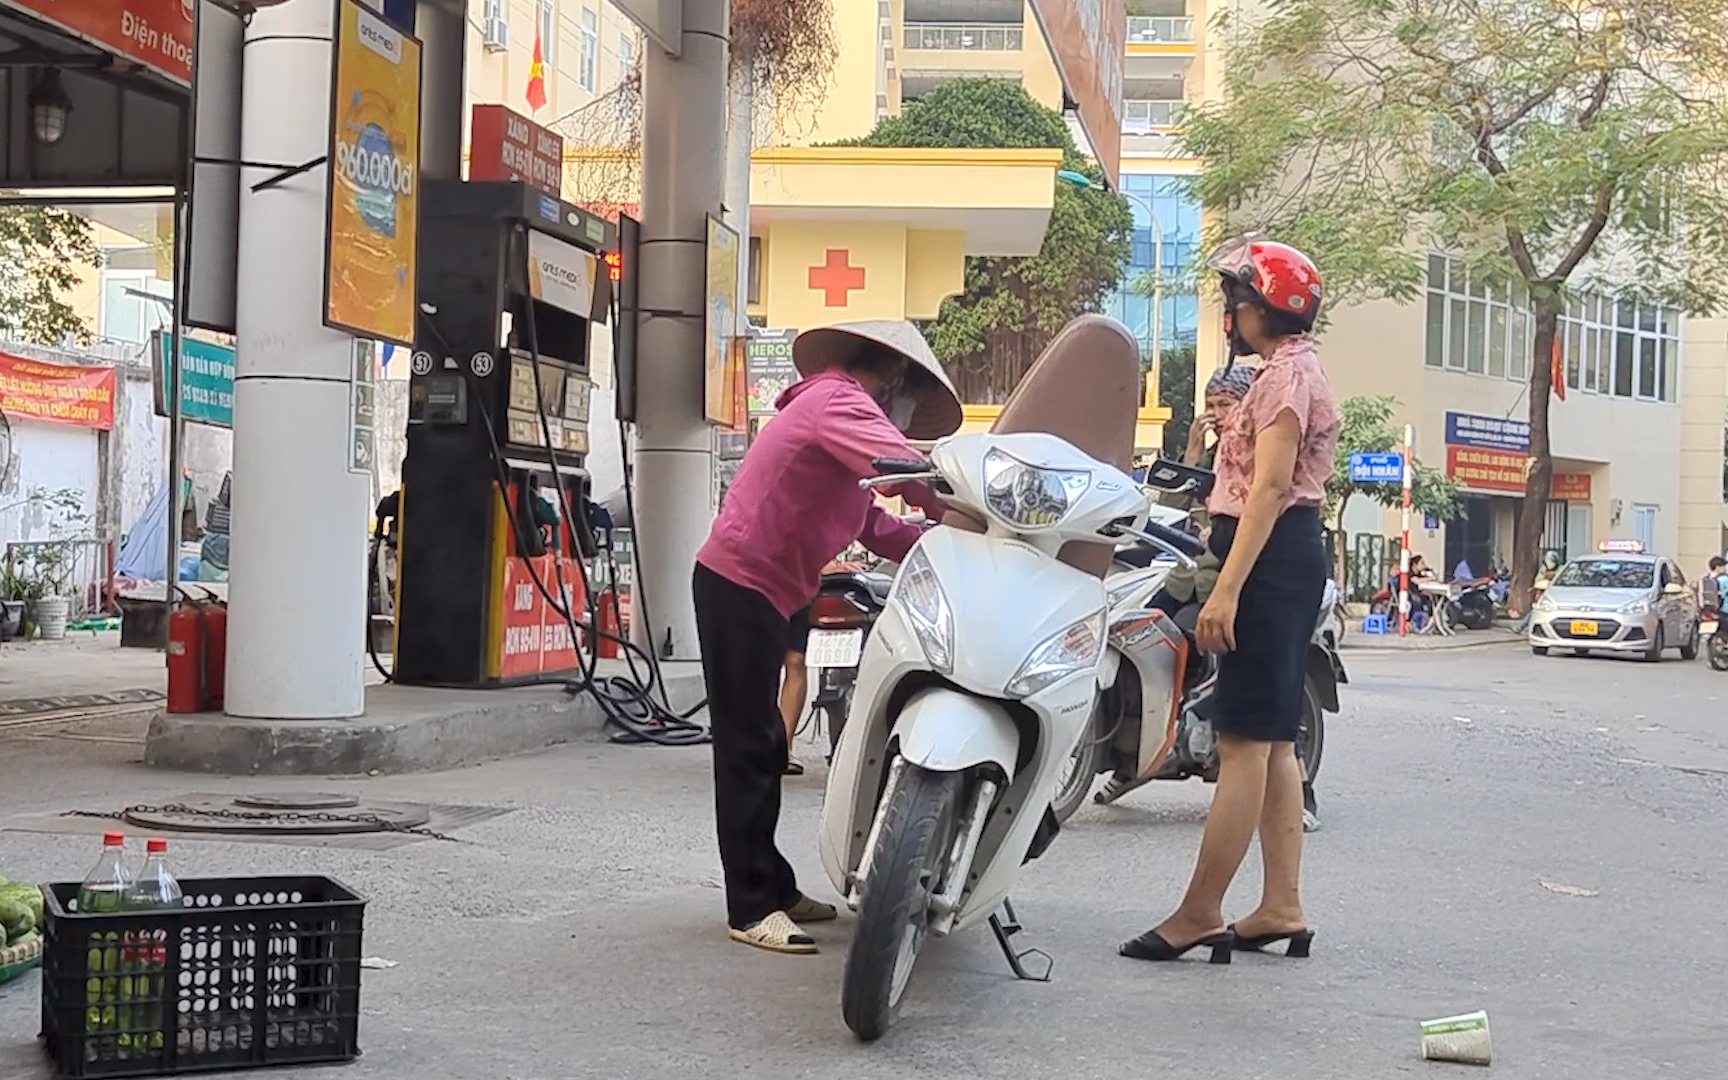 Hà Nội: Ngày càng xuất hiện nhiều điểm bán xăng vỉa hè "chặt chém” khách